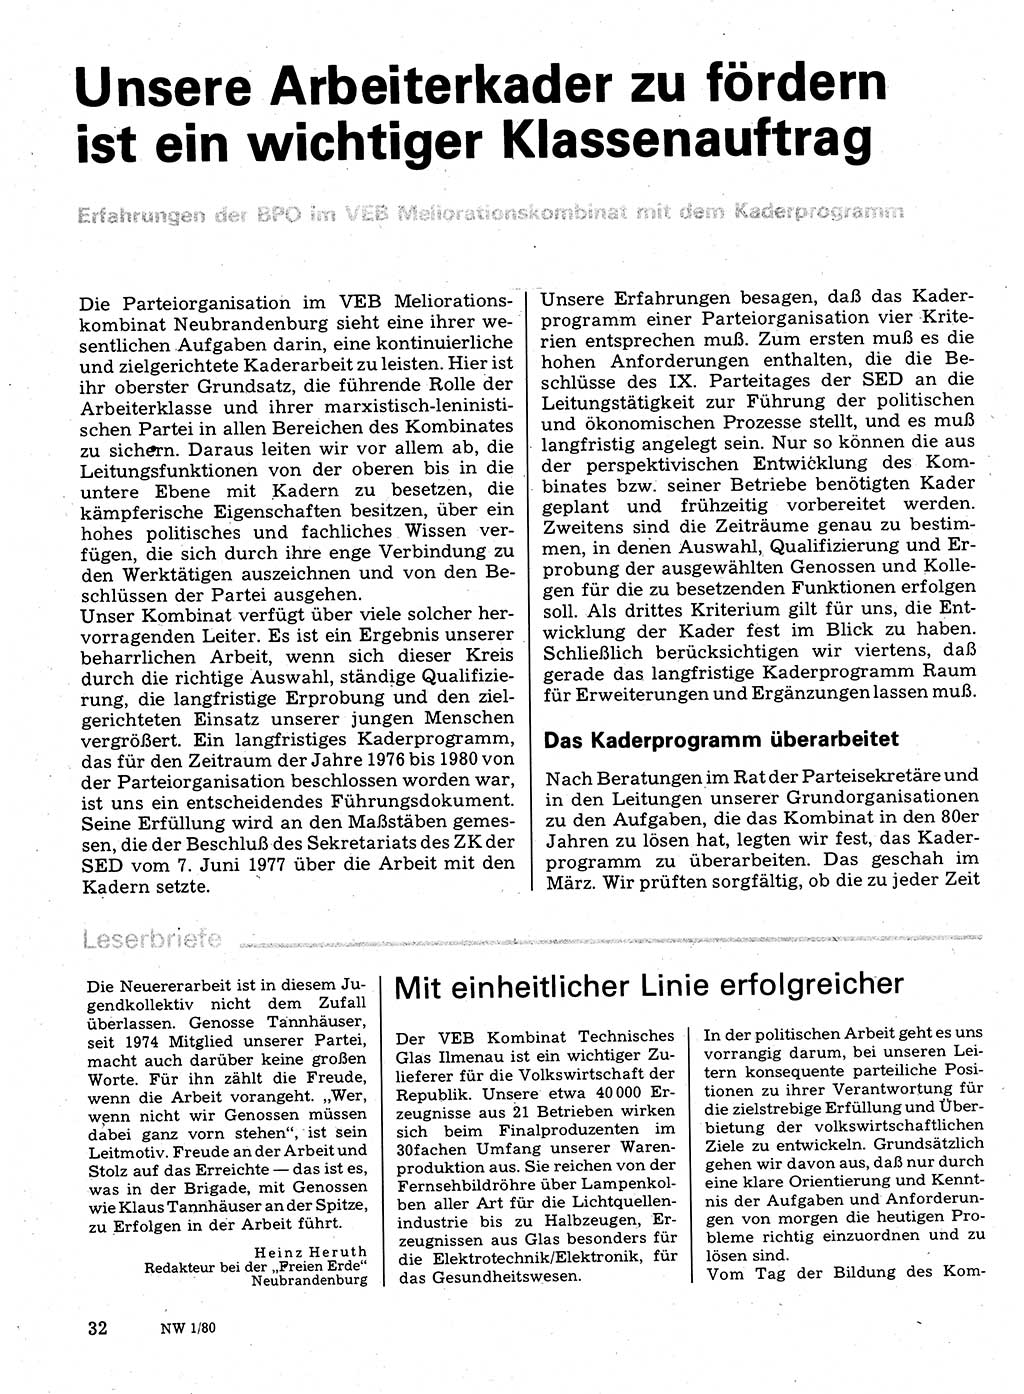 Neuer Weg (NW), Organ des Zentralkomitees (ZK) der SED (Sozialistische Einheitspartei Deutschlands) für Fragen des Parteilebens, 35. Jahrgang [Deutsche Demokratische Republik (DDR)] 1980, Seite 32 (NW ZK SED DDR 1980, S. 32)